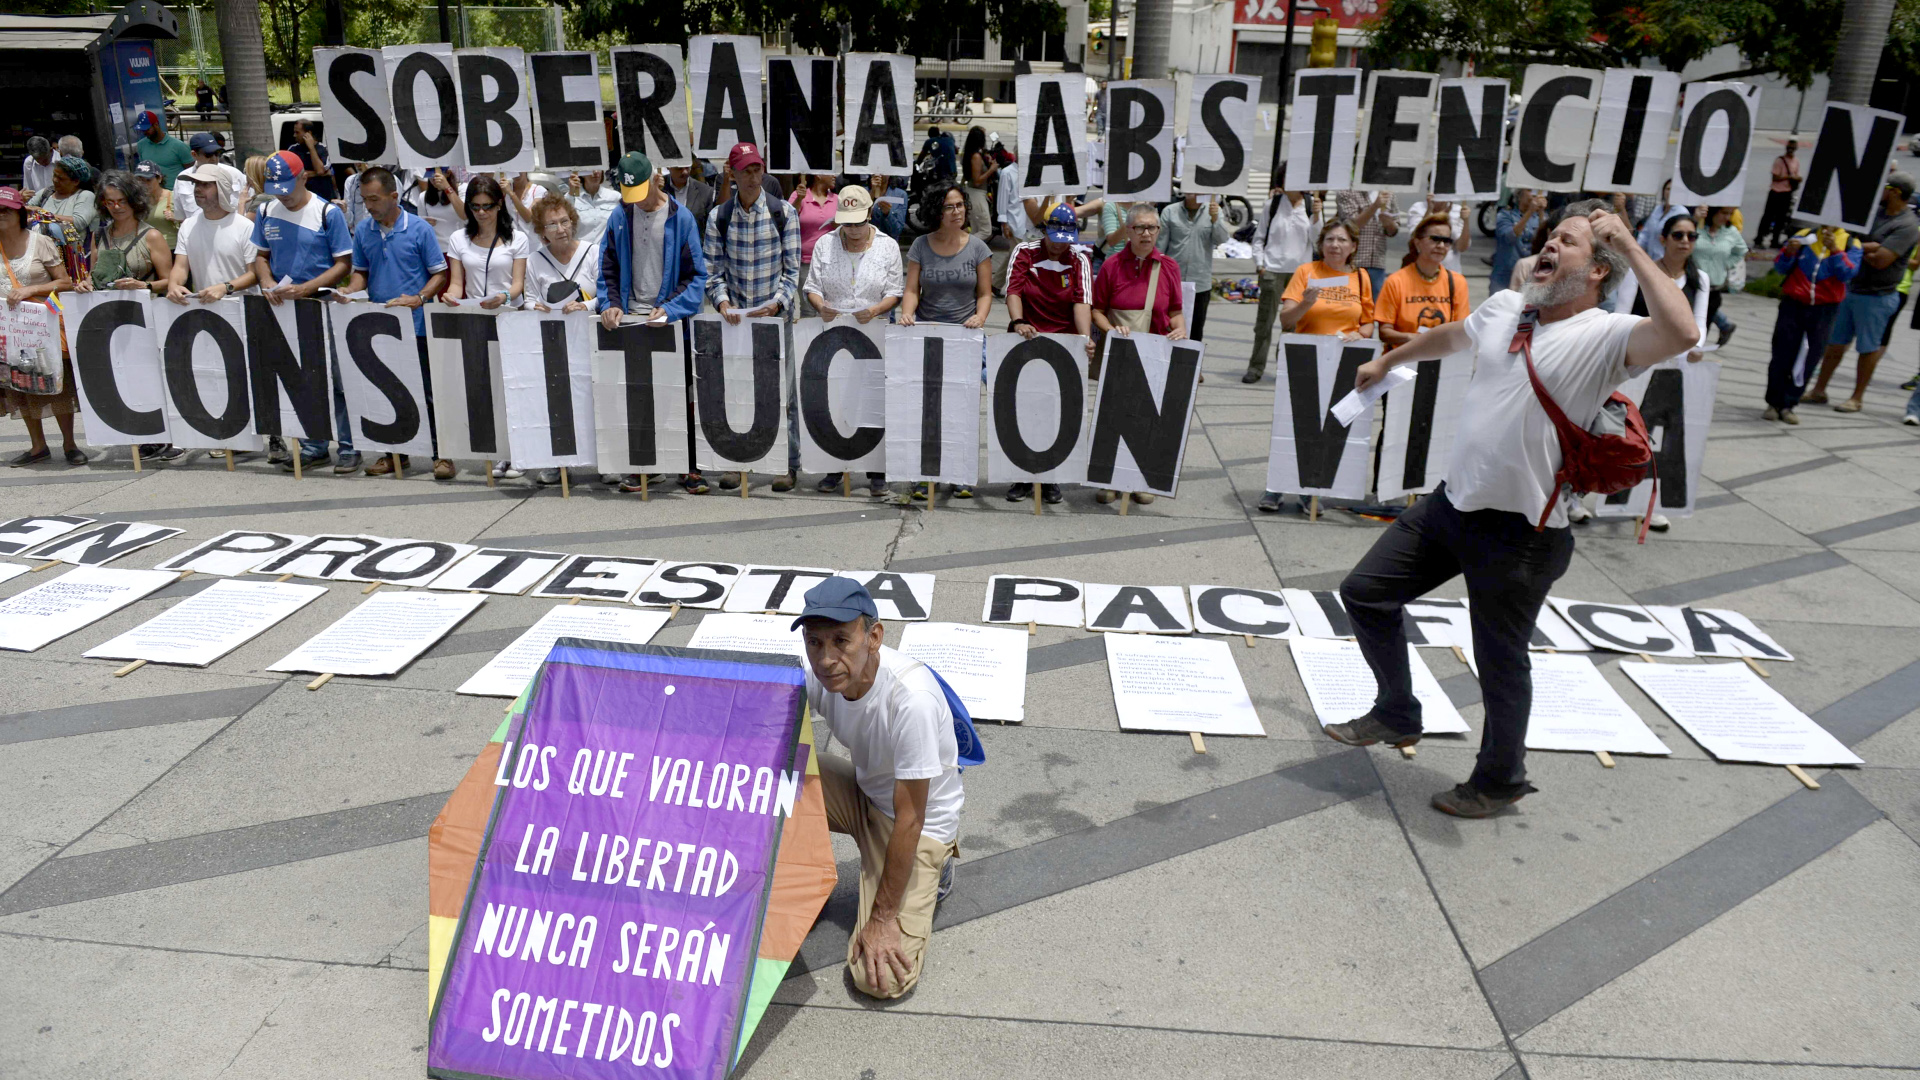 Proteste gegen verfassungsgebende Versammlung in Venezuela